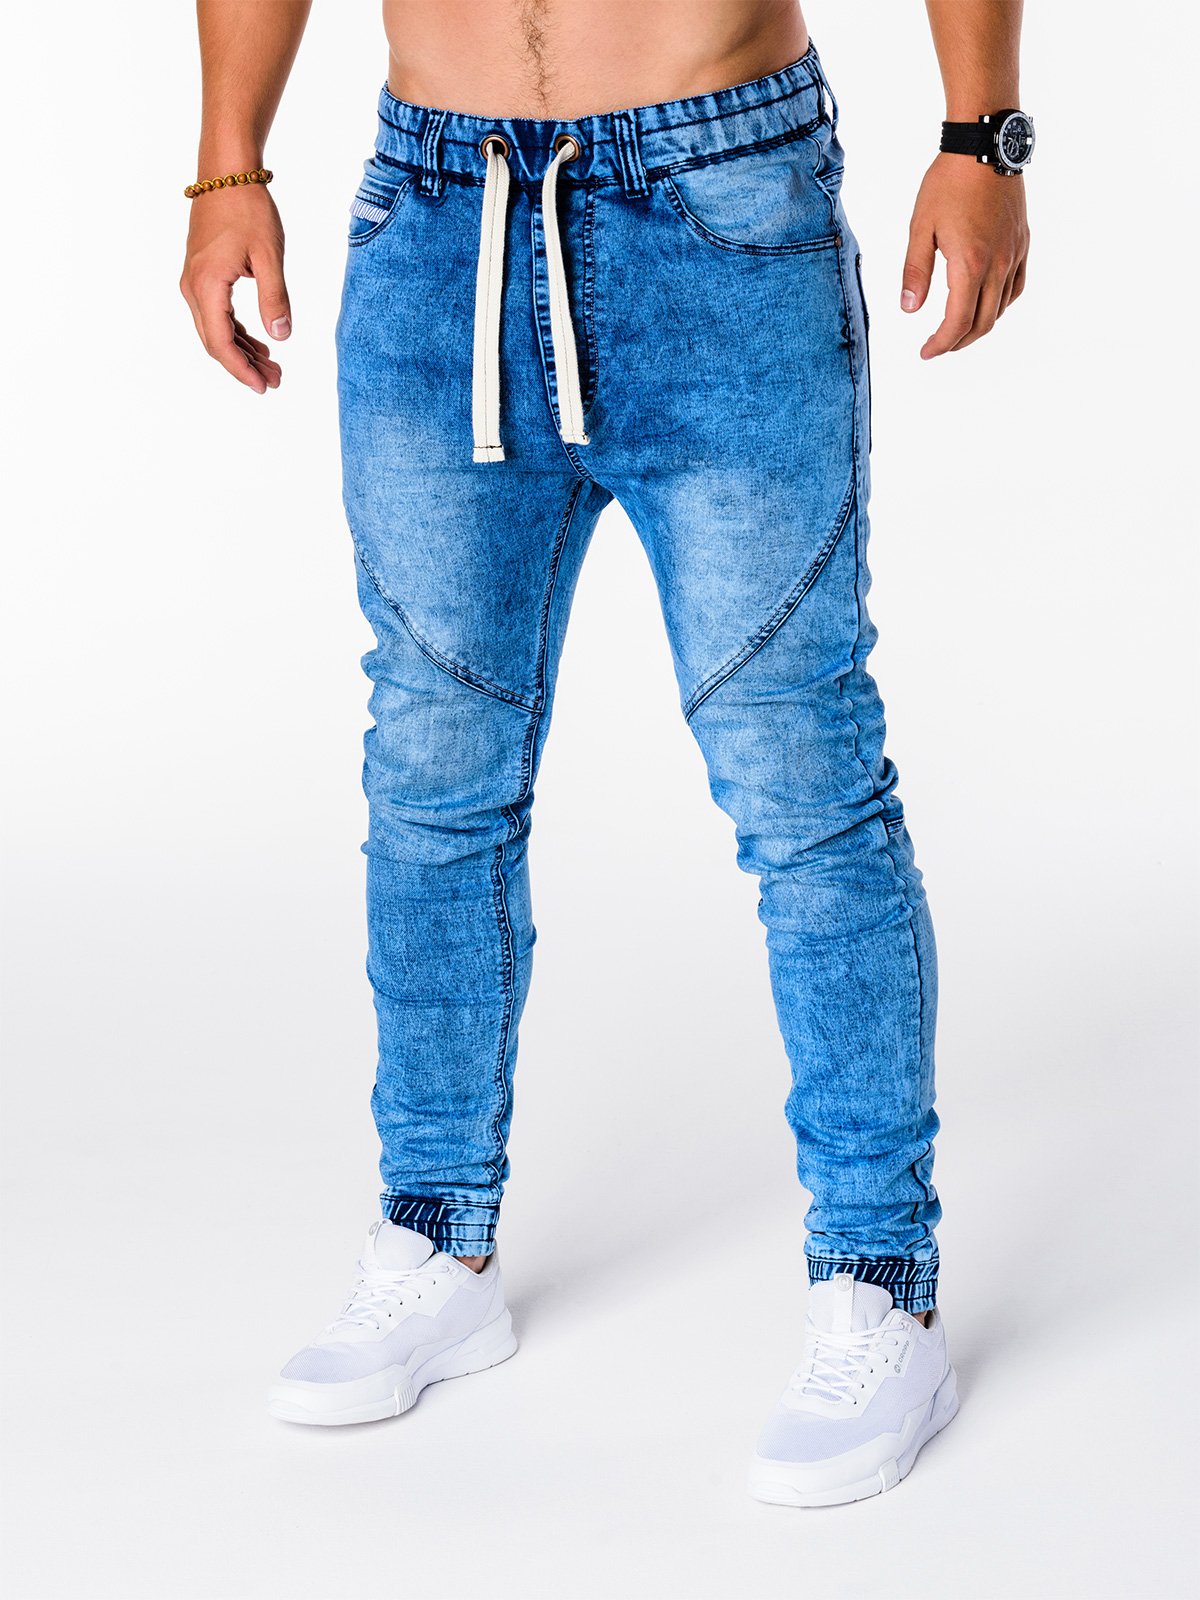 Men's jeans joggers P174 - light blue | MODONE wholesale - Clothing For Men